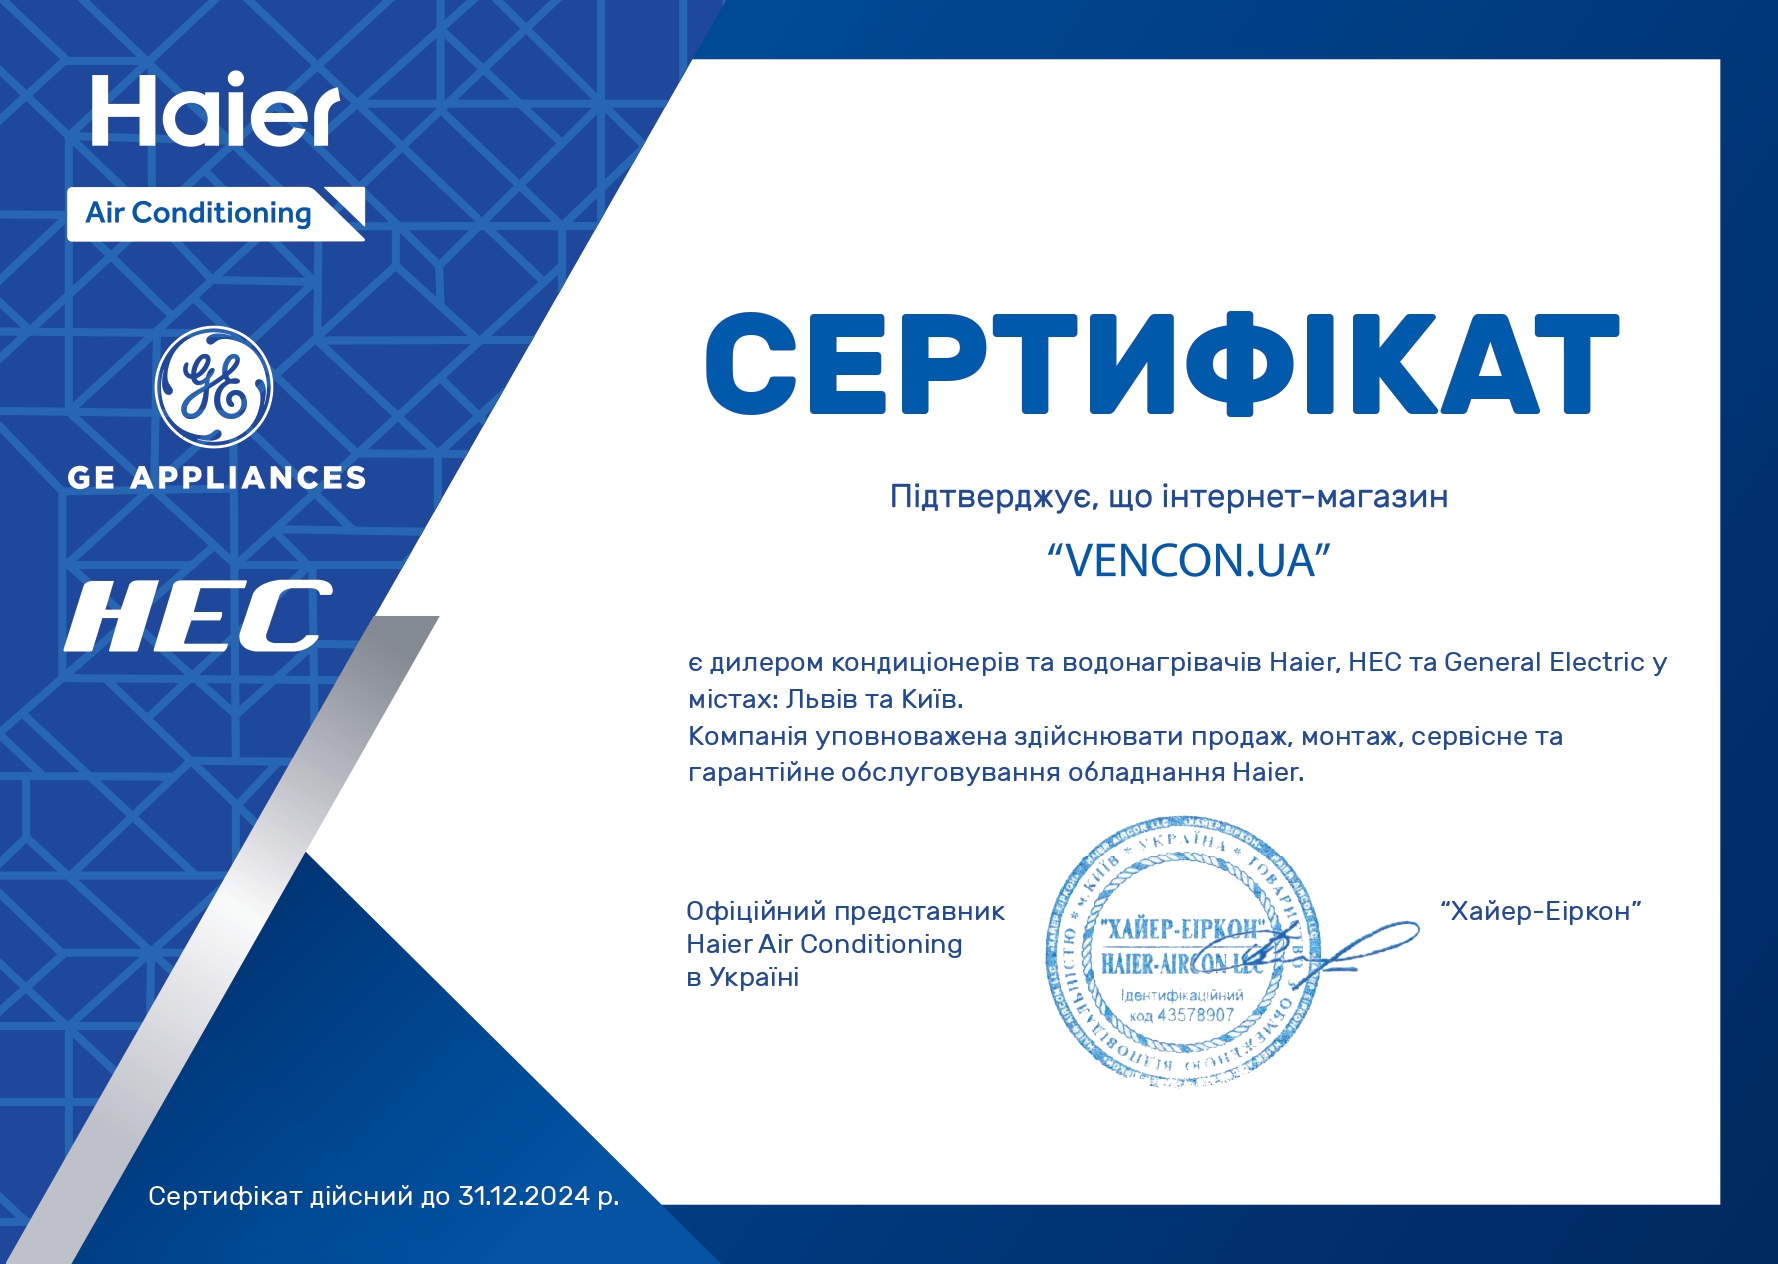 Кондиционеры General Electric во Львове - сертификат официального продавца General Electric